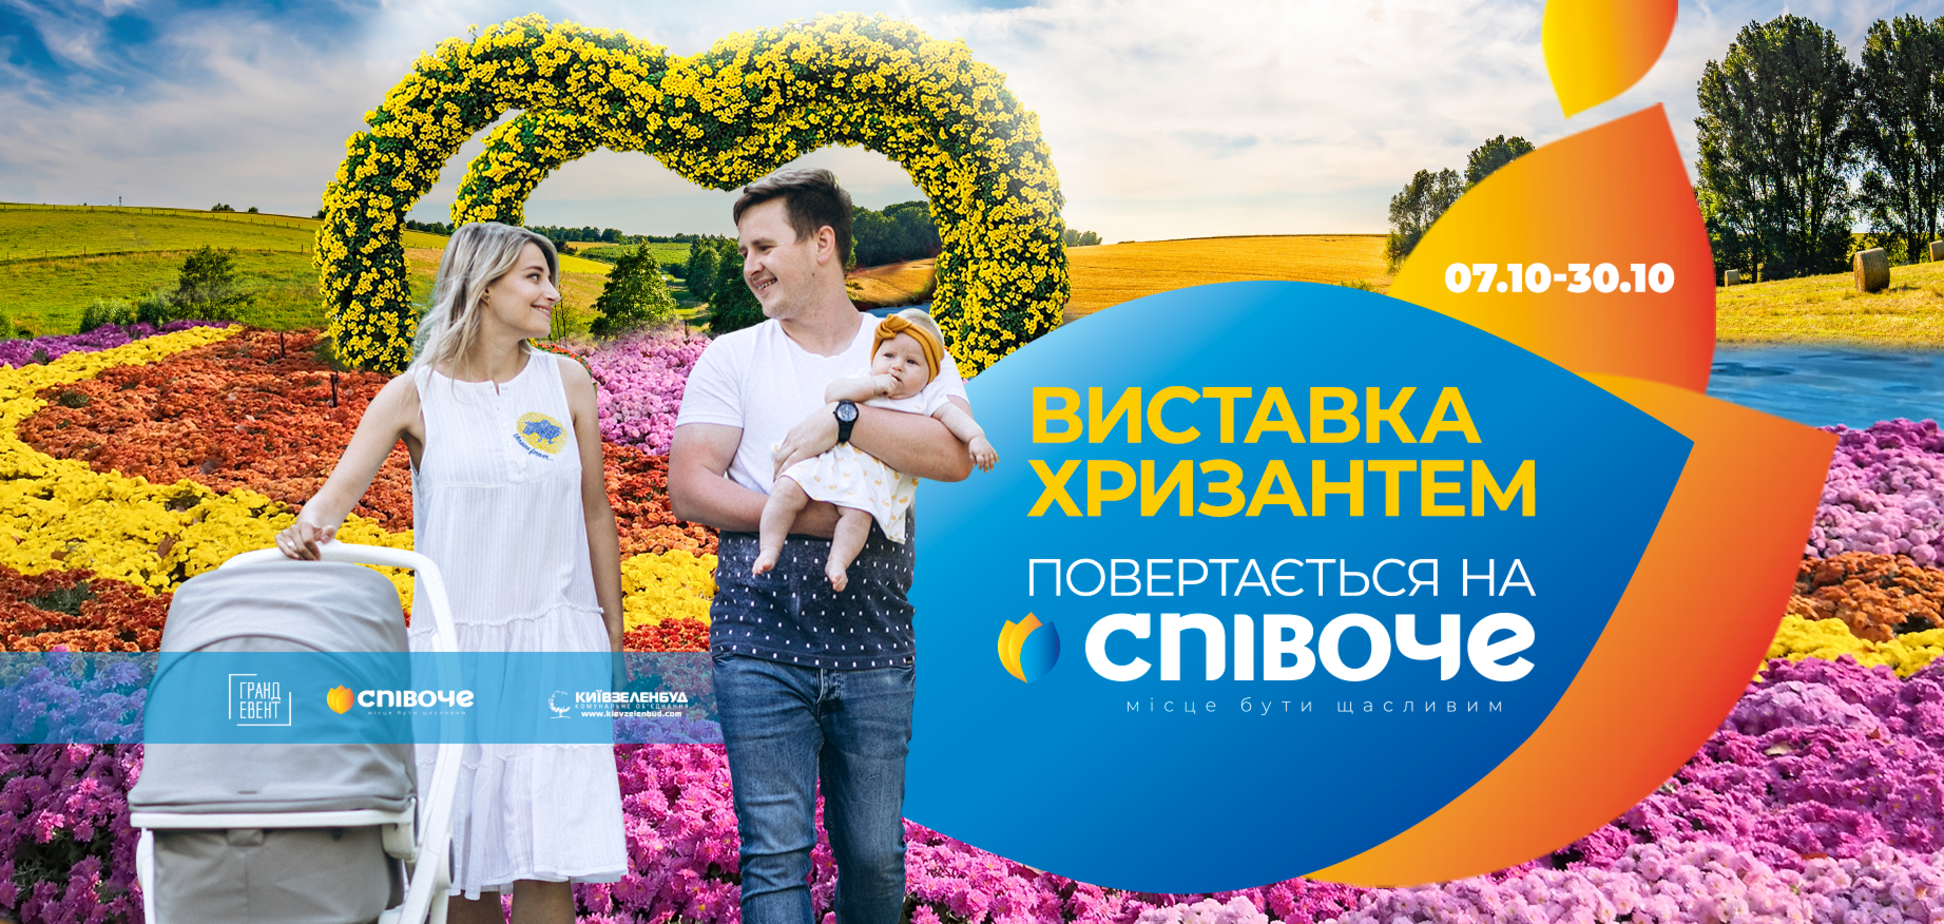 В Киеве на Спивочем откроется выставка хризантем